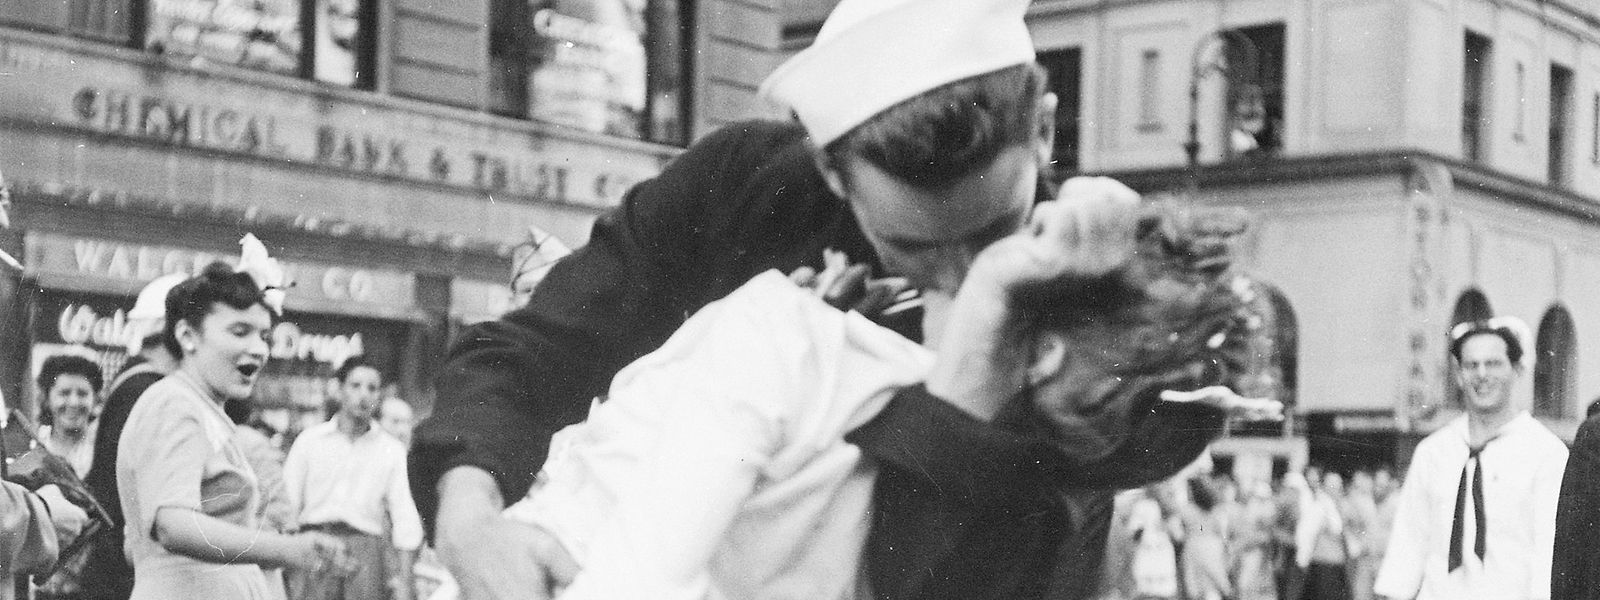 Alfred Eisenstaedt war nicht der einzige Fotograf, der den Kuss ablichtete - dieses Bild zeigt die Aktion aus einer anderen Perspektive. 